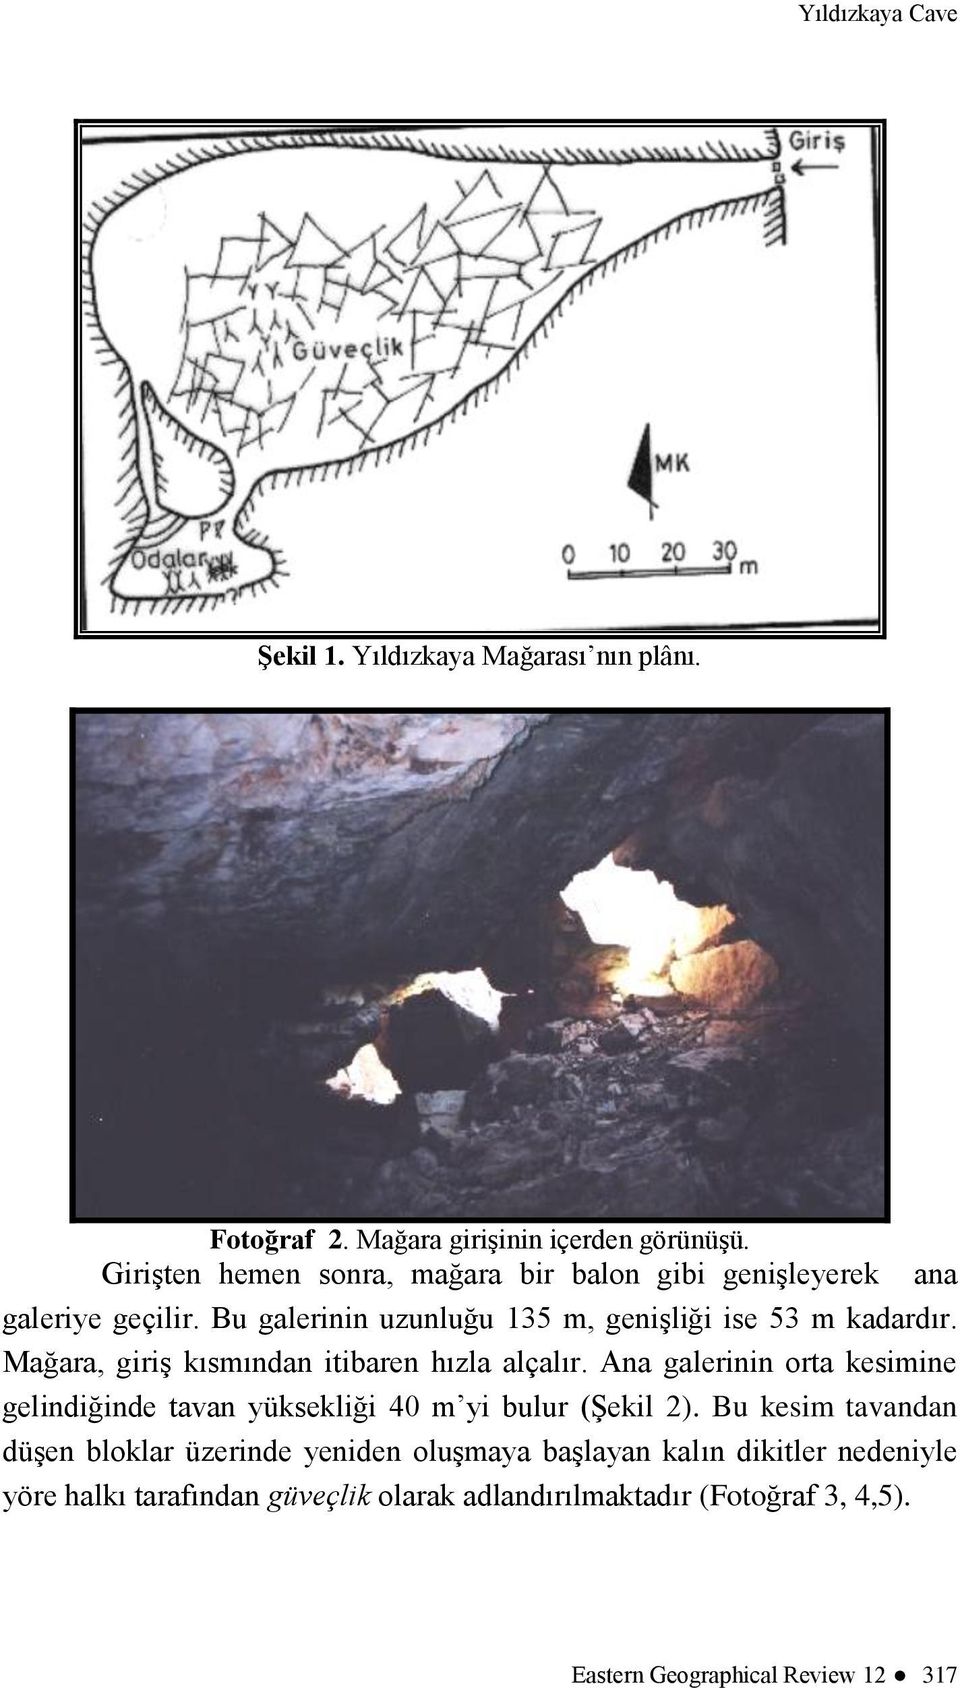 Mağara, giriş kısmından itibaren hızla alçalır. Ana galerinin orta kesimine gelindiğinde tavan yüksekliği 40 m yi bulur (Şekil 2).